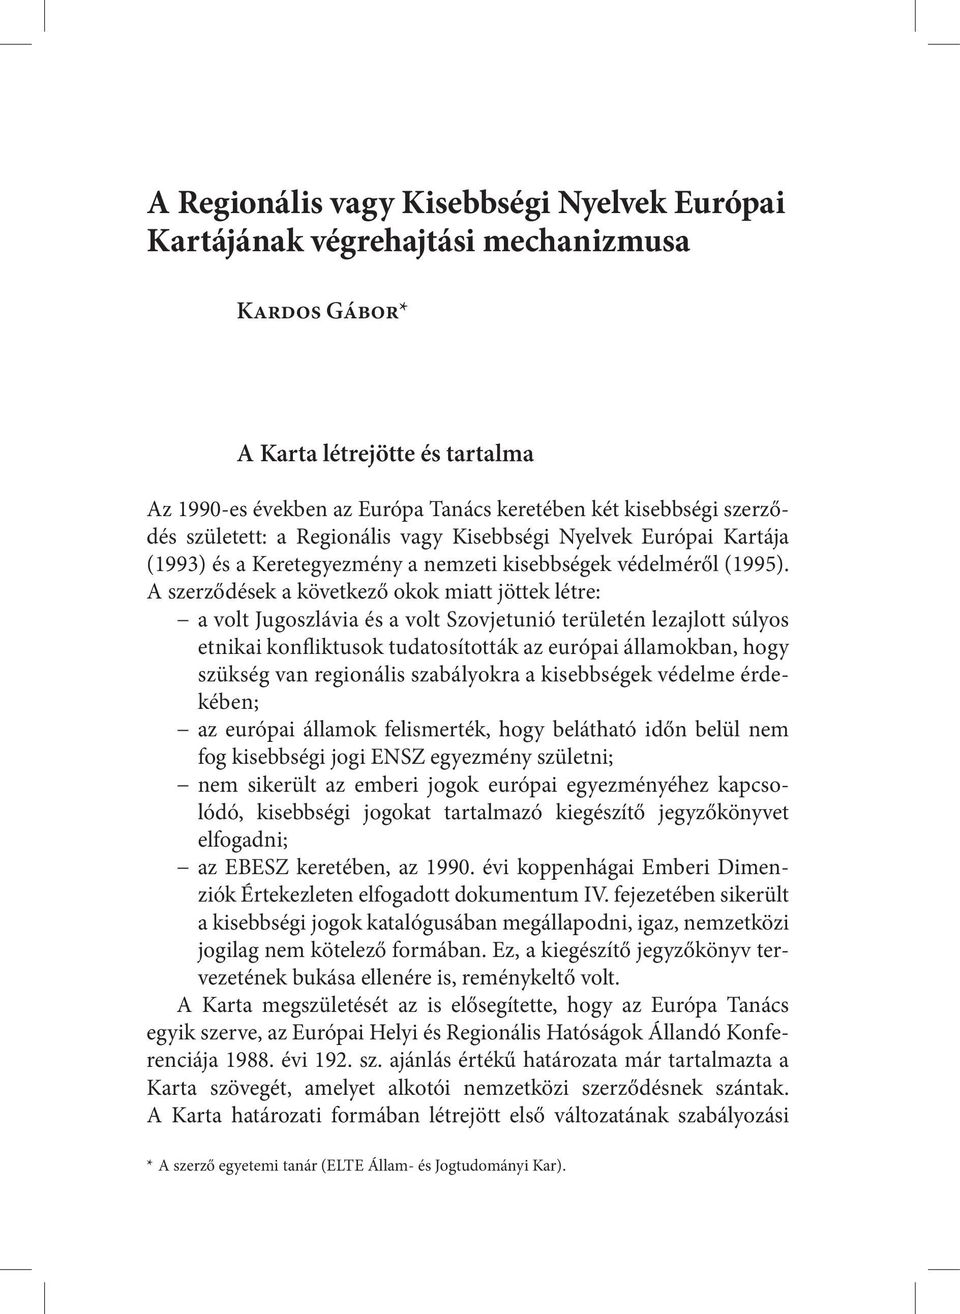 A szerződések a következő okok miatt jöttek létre: a volt Jugoszlávia és a volt Szovjetunió területén lezajlott súlyos etnikai konfliktusok tudatosították az európai államokban, hogy szükség van